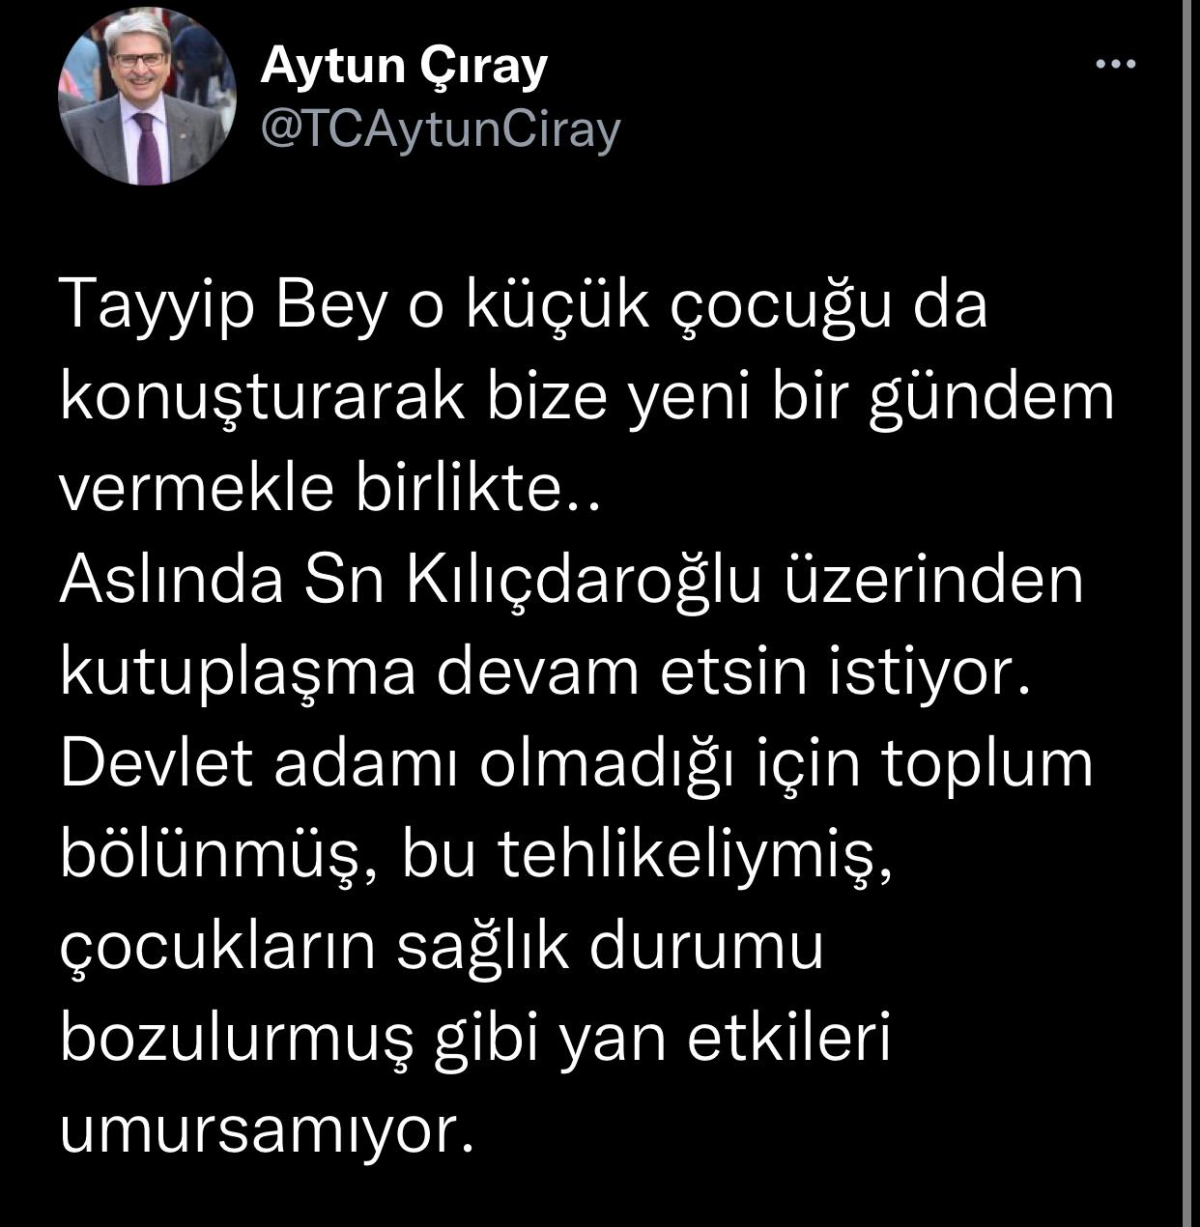 Erdoğan mitinge çocuk çıkartmıştı: Kılıçdaroğlu'ndan 'pedagoji' vurgulu cevap: Paylaşmayın!